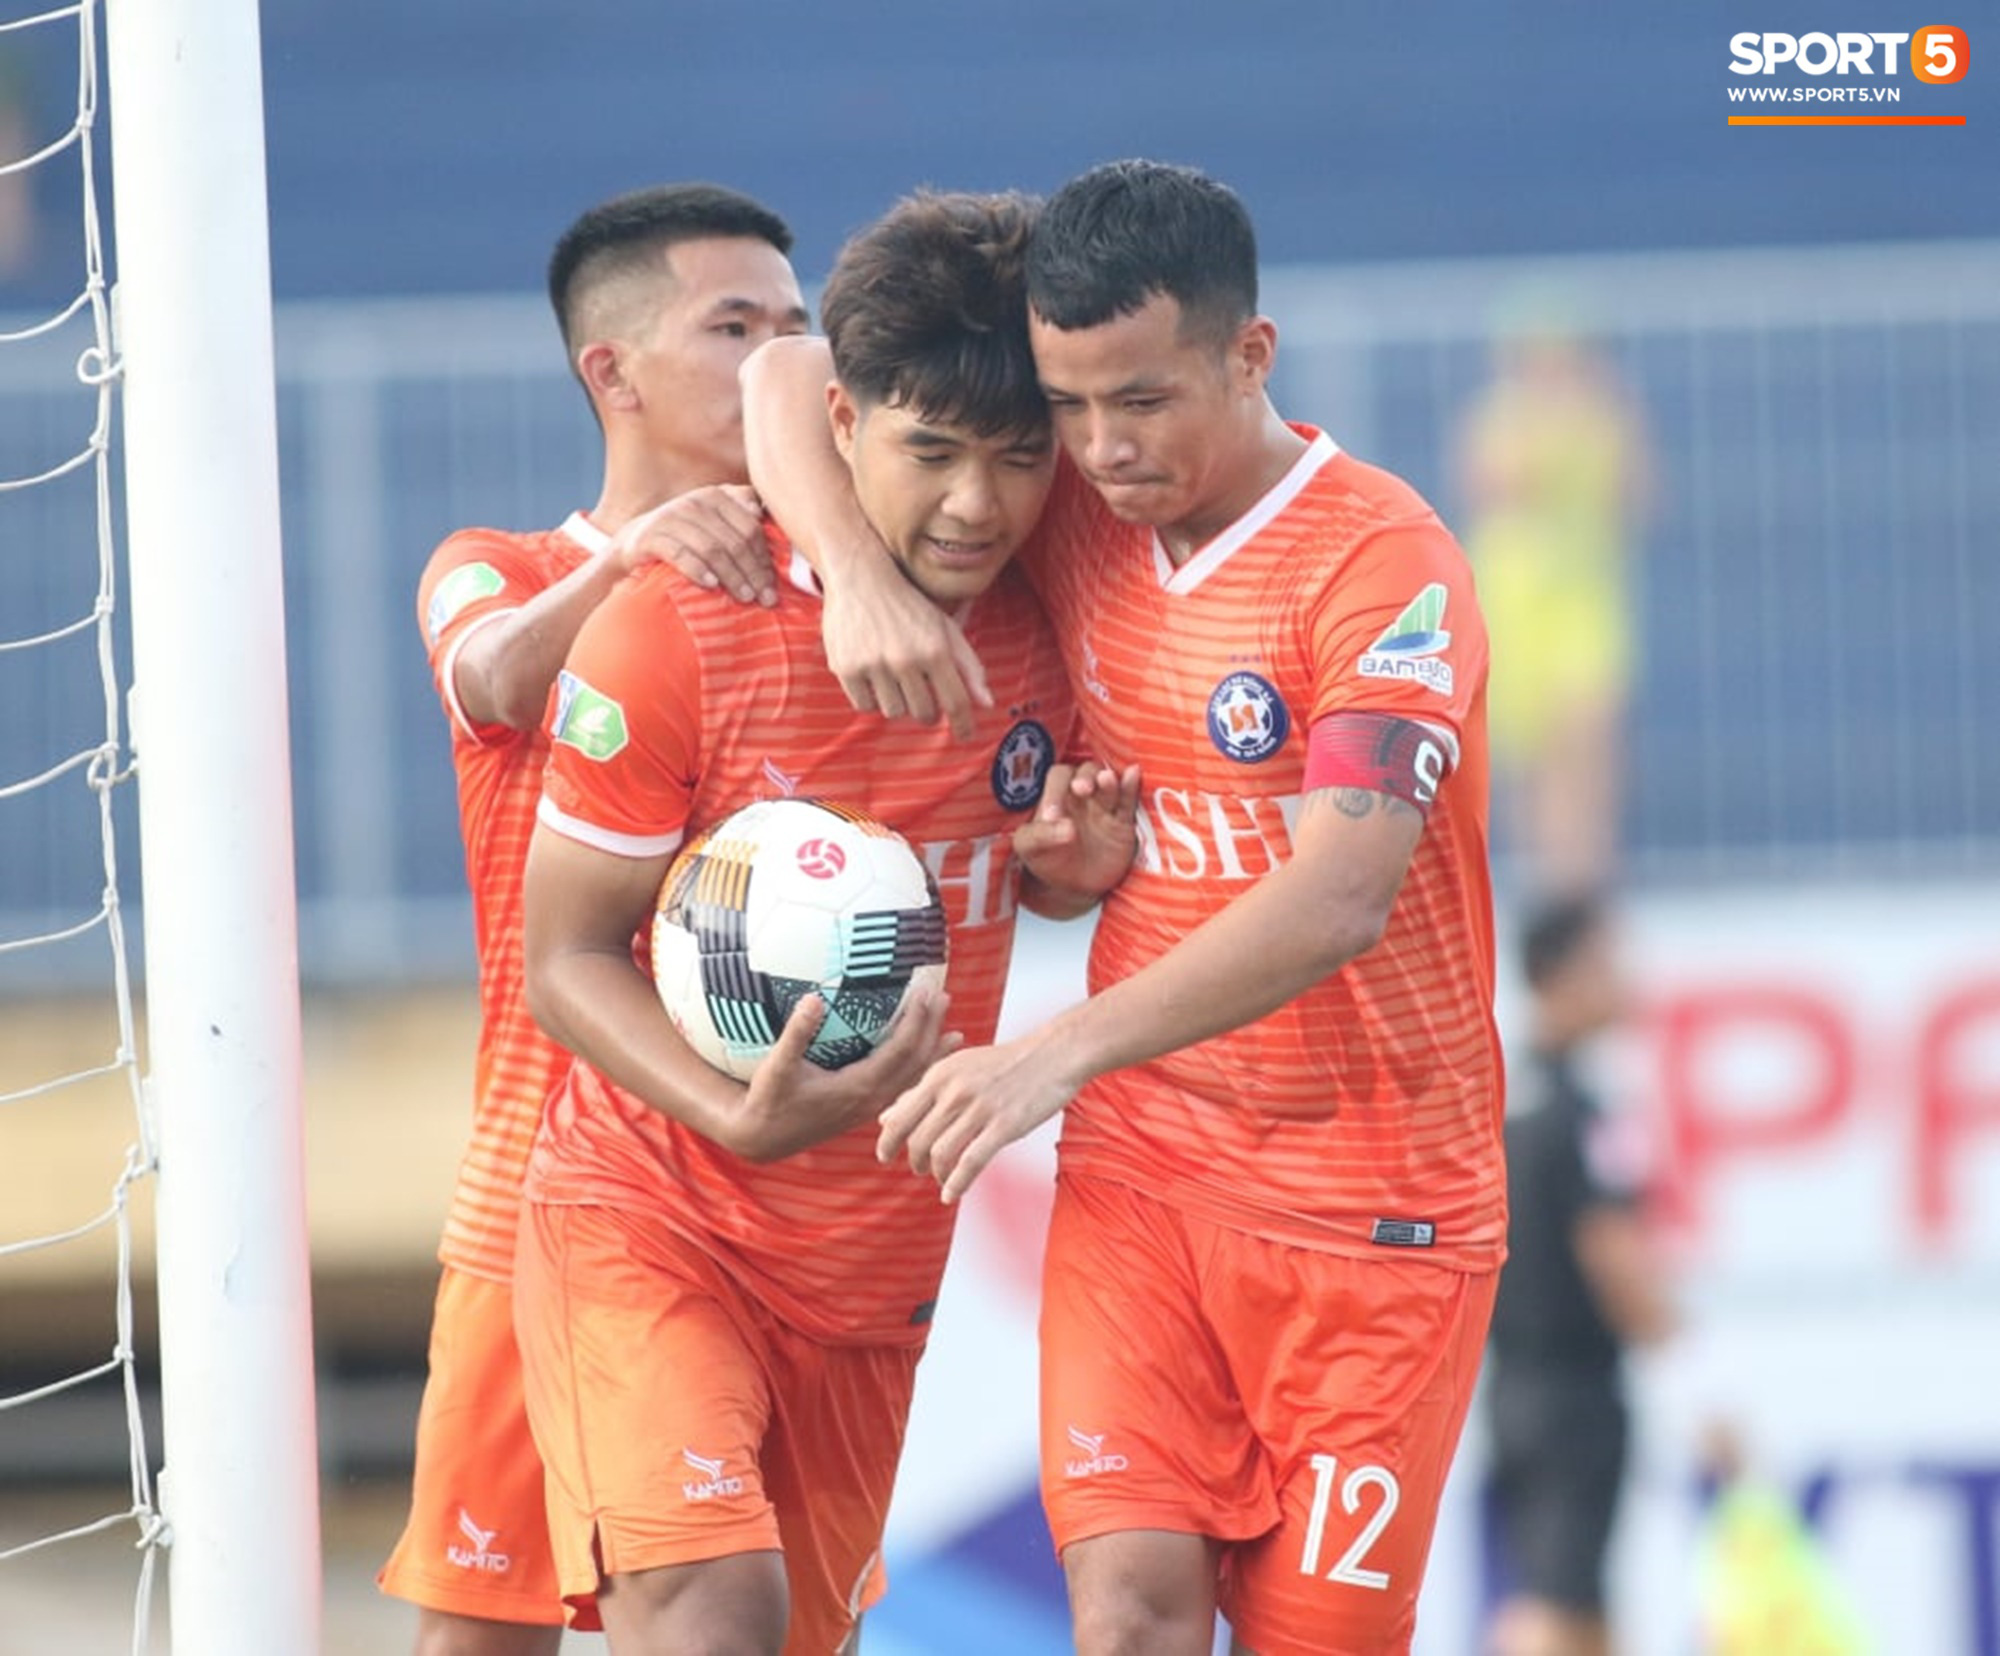 Cúp Quốc gia 2020: Đức Chinh tỏa sáng giúp Đà Nẵng đi tiếp, đội bóng Hạng Nhất mang đến bất ngờ lớn - Ảnh 1.